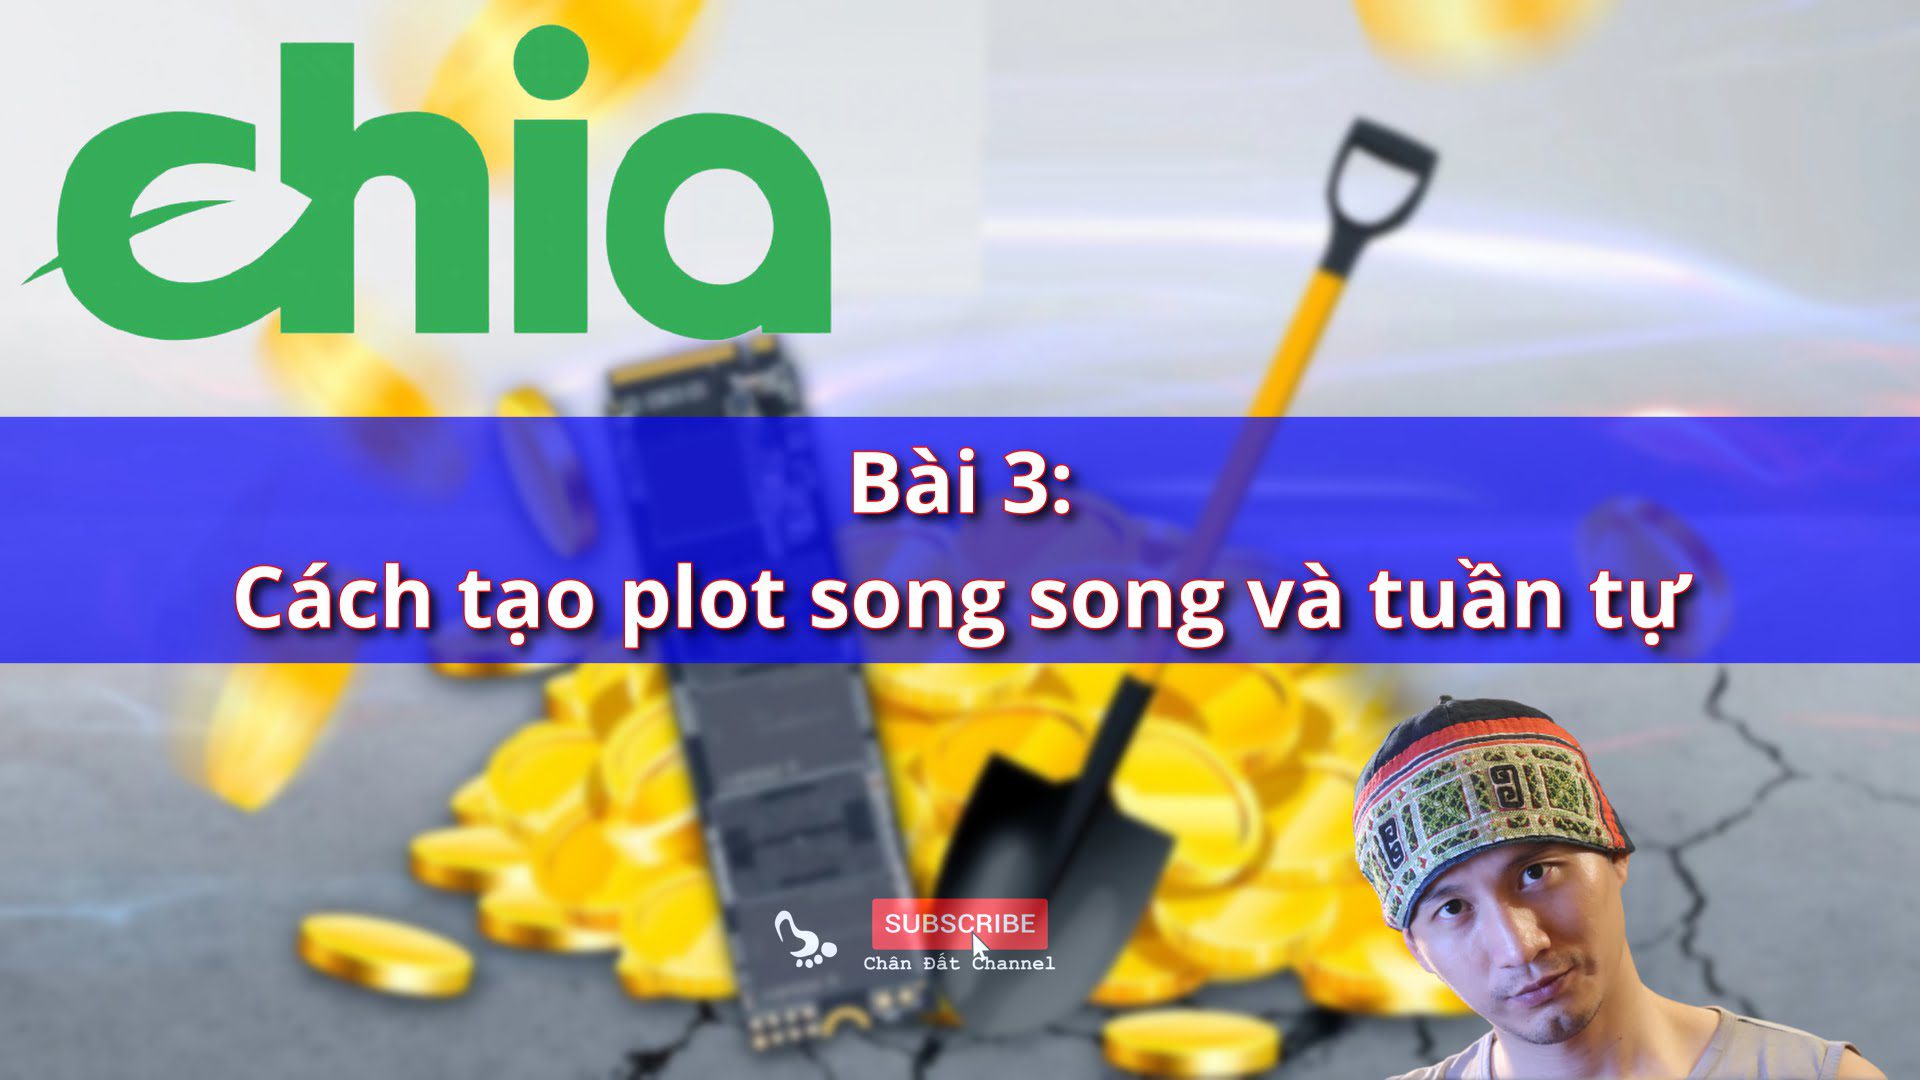 Bài 3: Cách tạo plot song song và tuần tự để đào Chia Coin